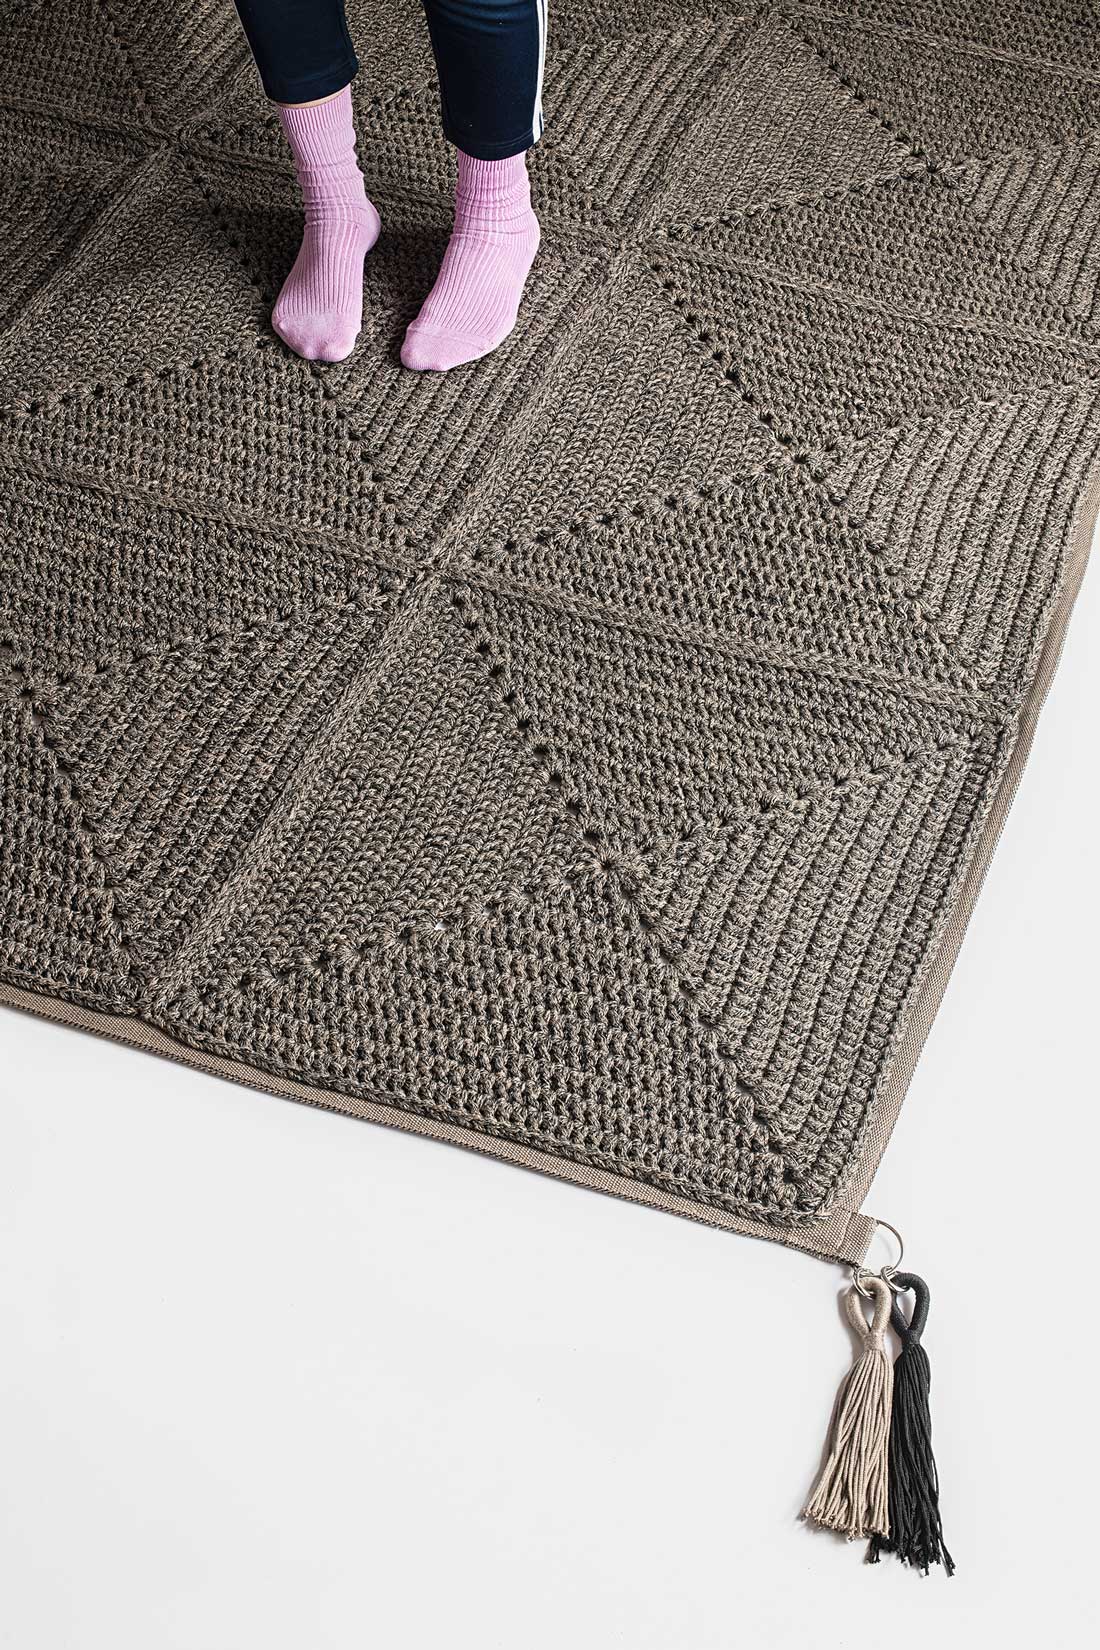 Outdoor/Indoor crochet rug